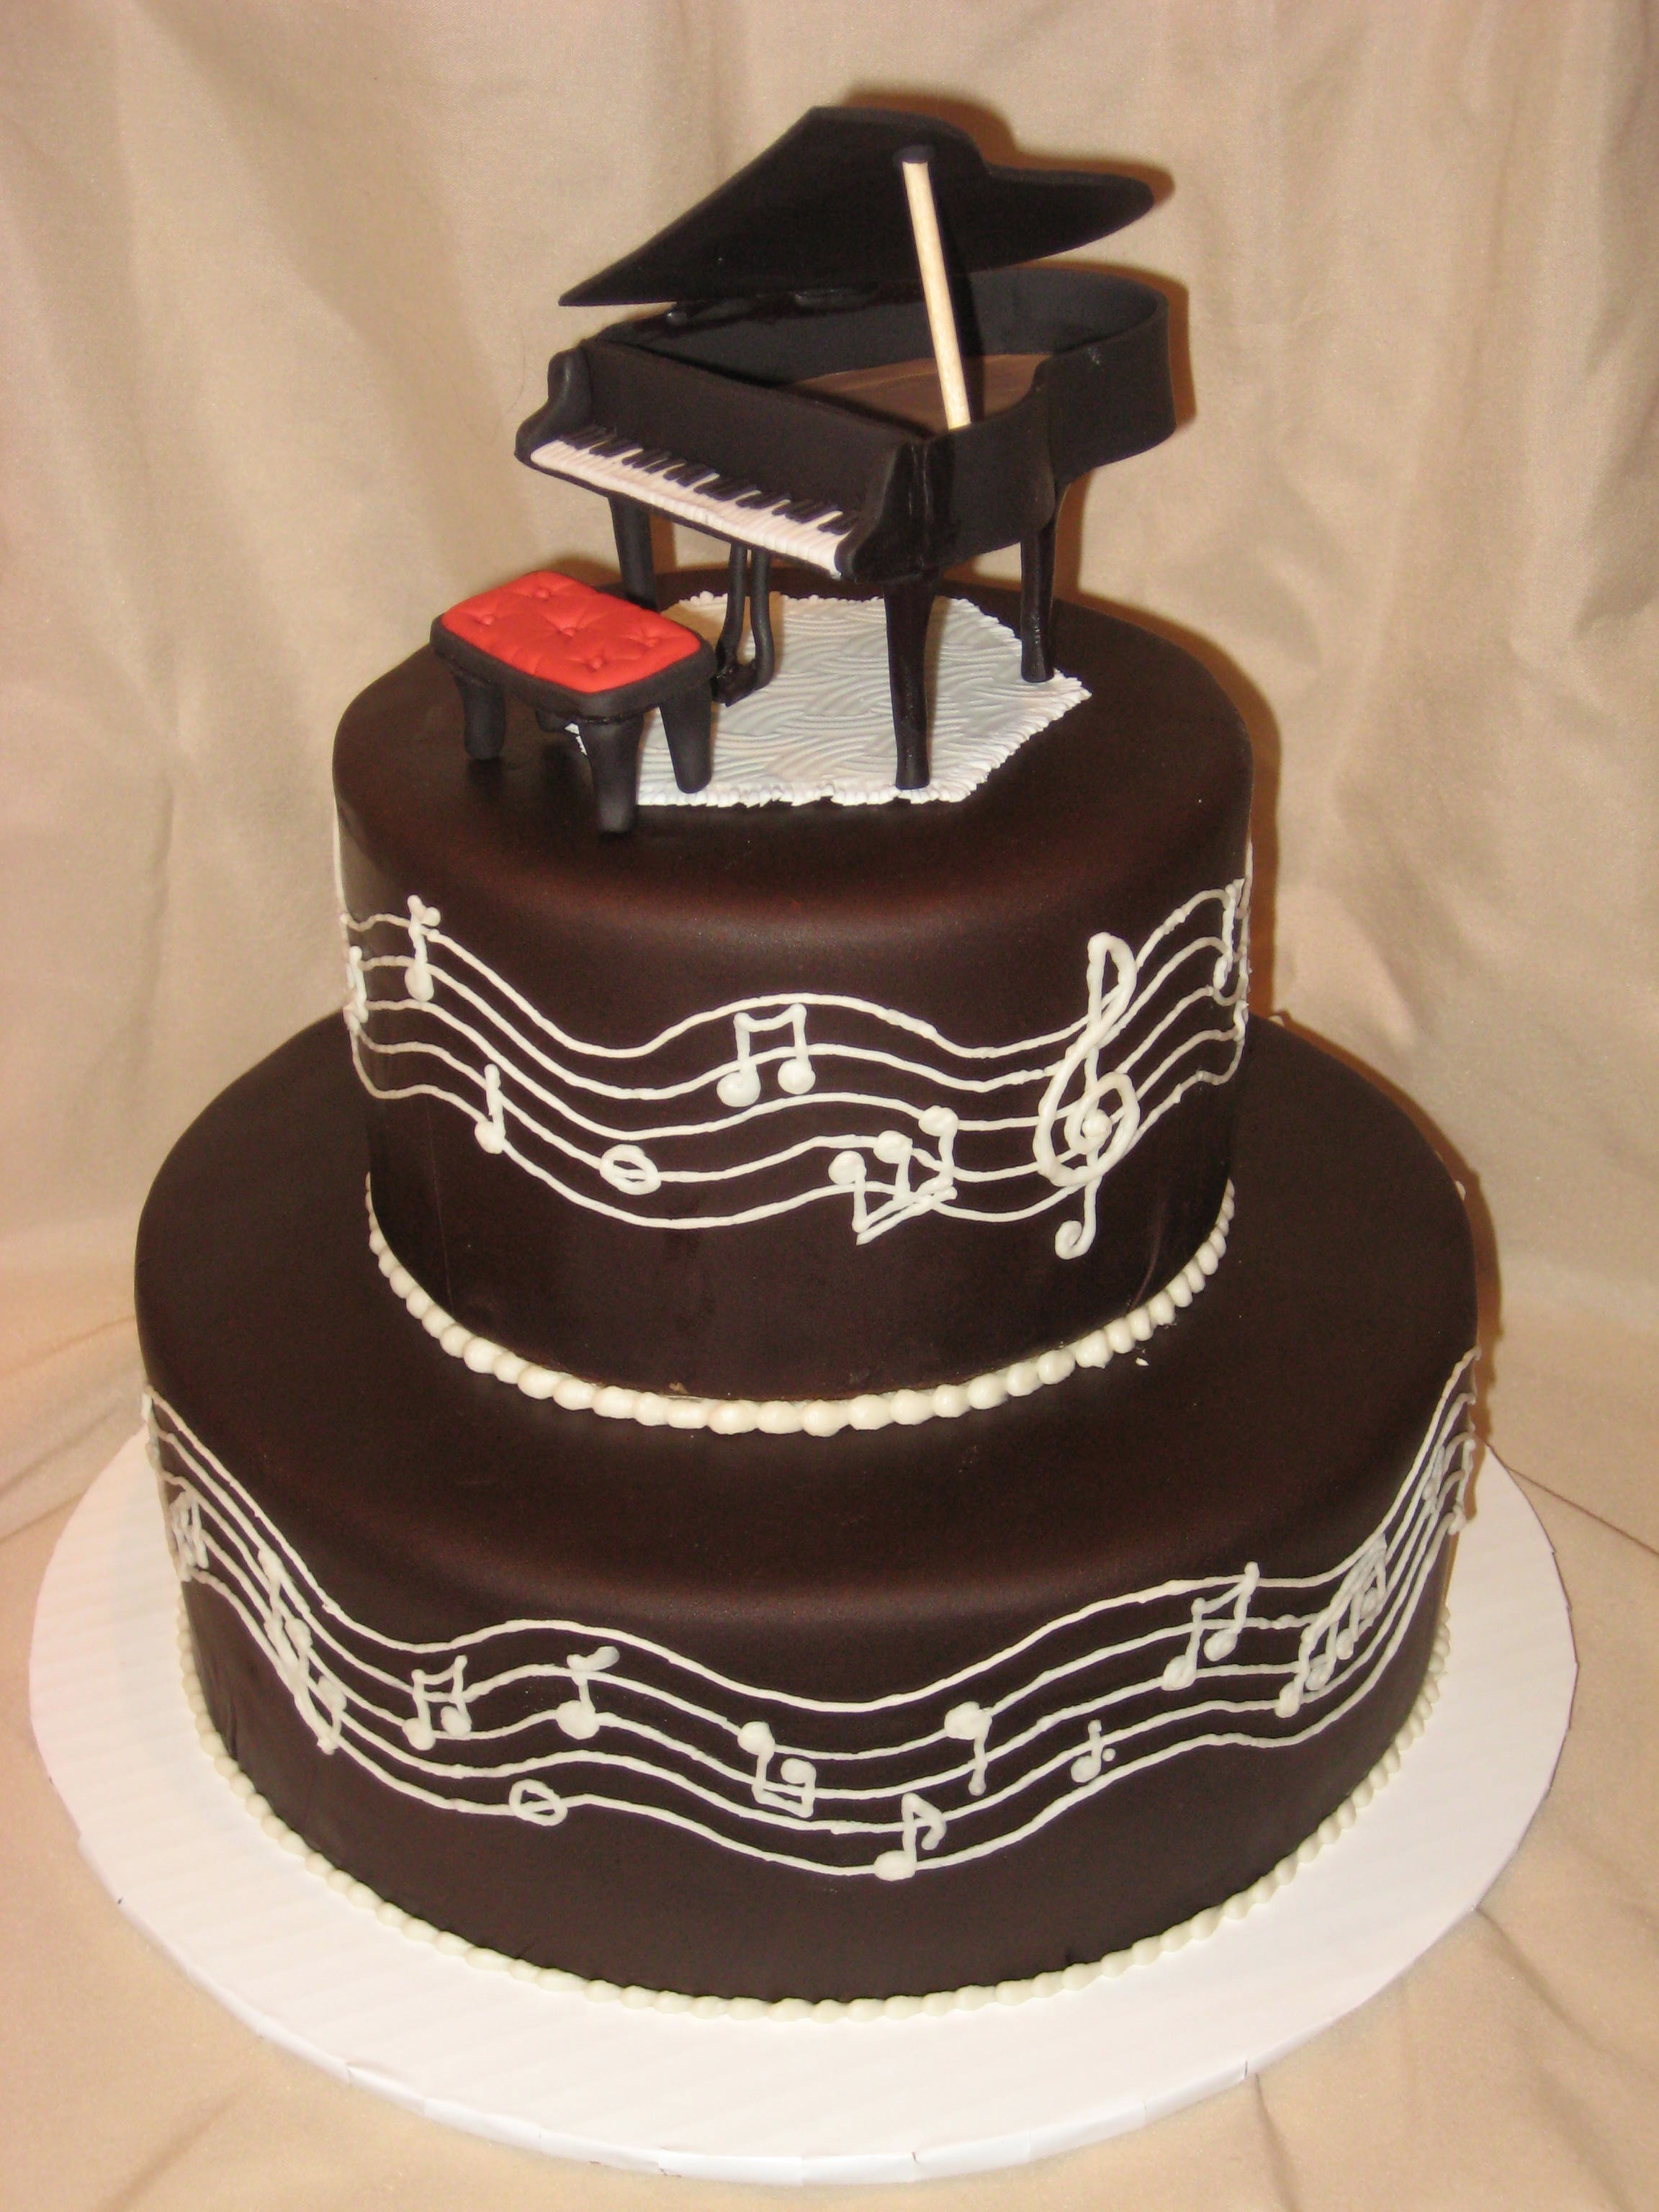 Happy Birthday Piano Cake